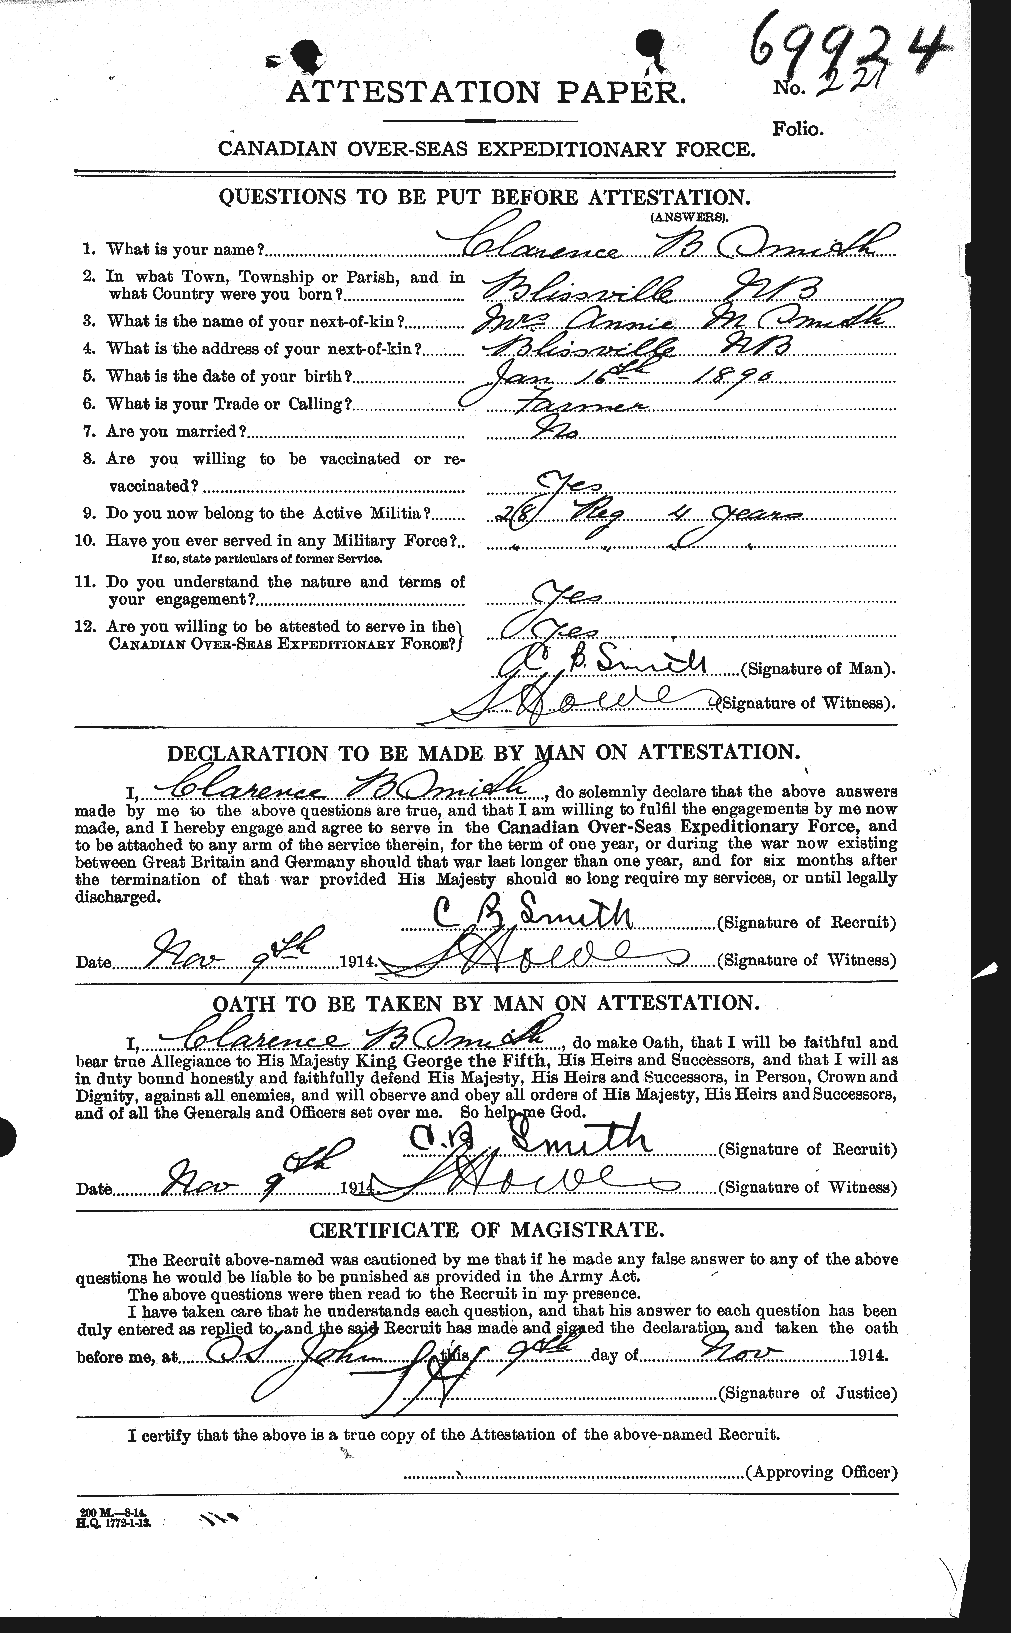 Dossiers du Personnel de la Première Guerre mondiale - CEC 104013a